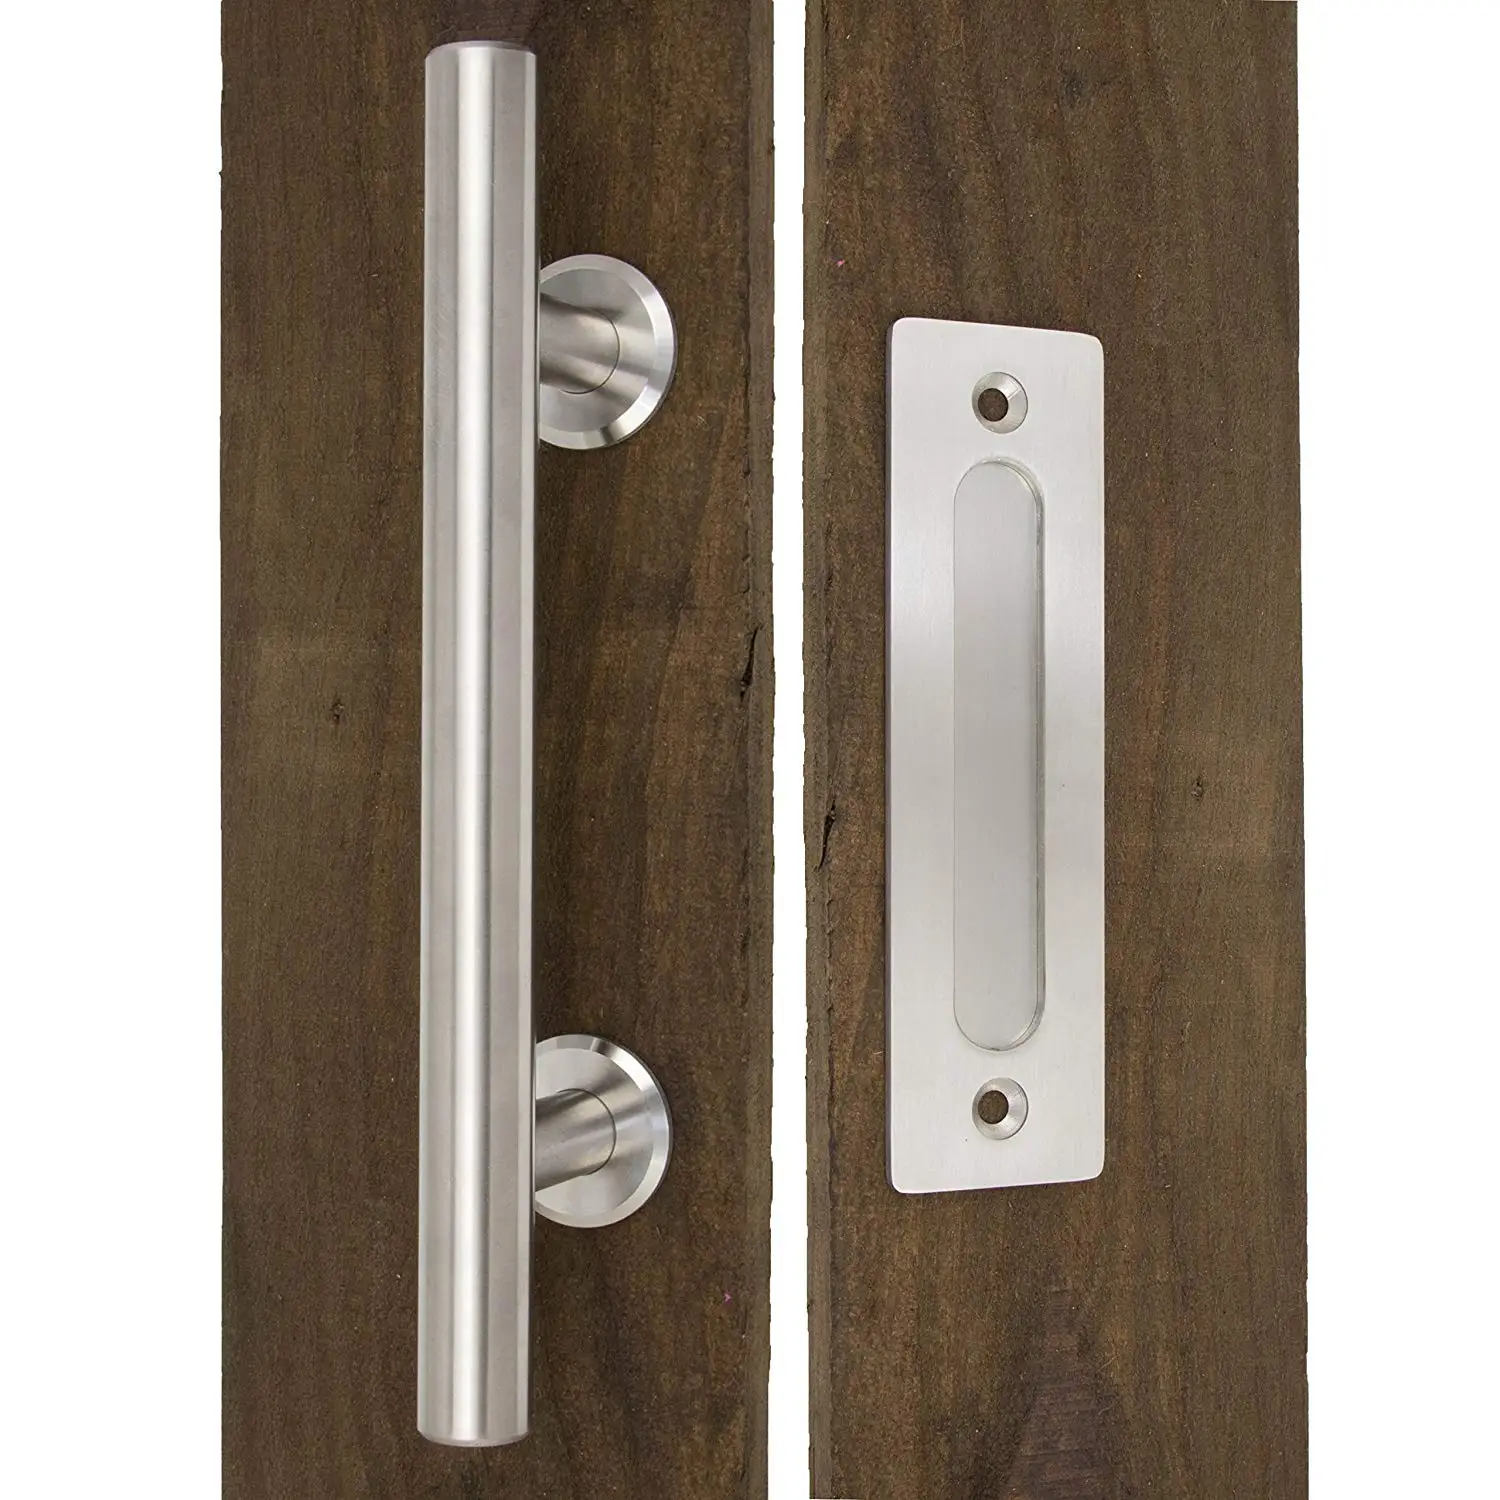 Большая раздвижная дверная ручка сарая 1" обе ручки для внешней двери и промывка для интерьера Современная дверная металлическая ручка сарая